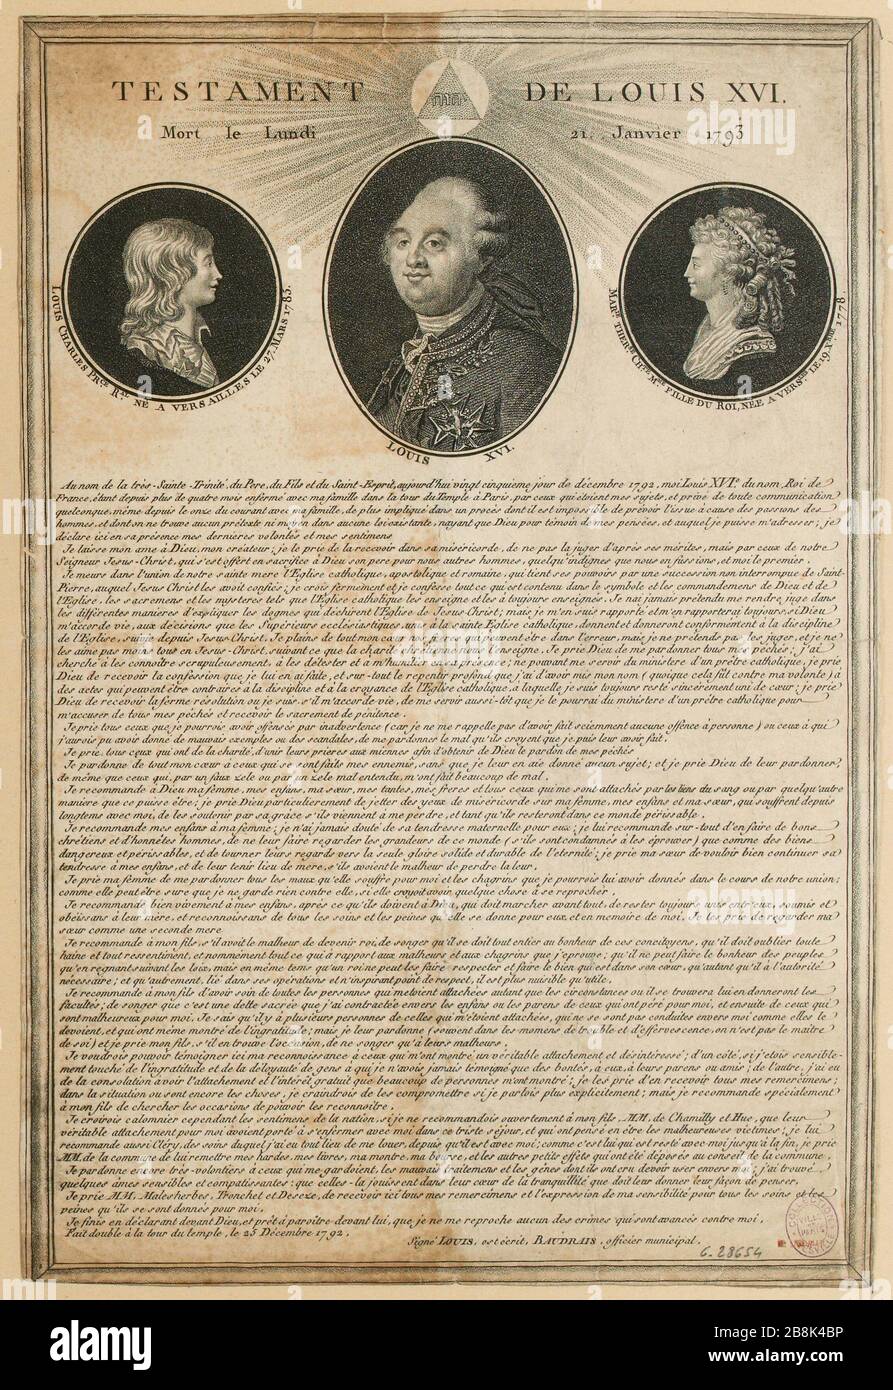 Rivoluzione francese. Testamento di Luigi XVI decorato con ritratti del Delfino, Madame Royale e del re, lettera del 25 dicembre 1792. (titolo fittizio) Foto Stock